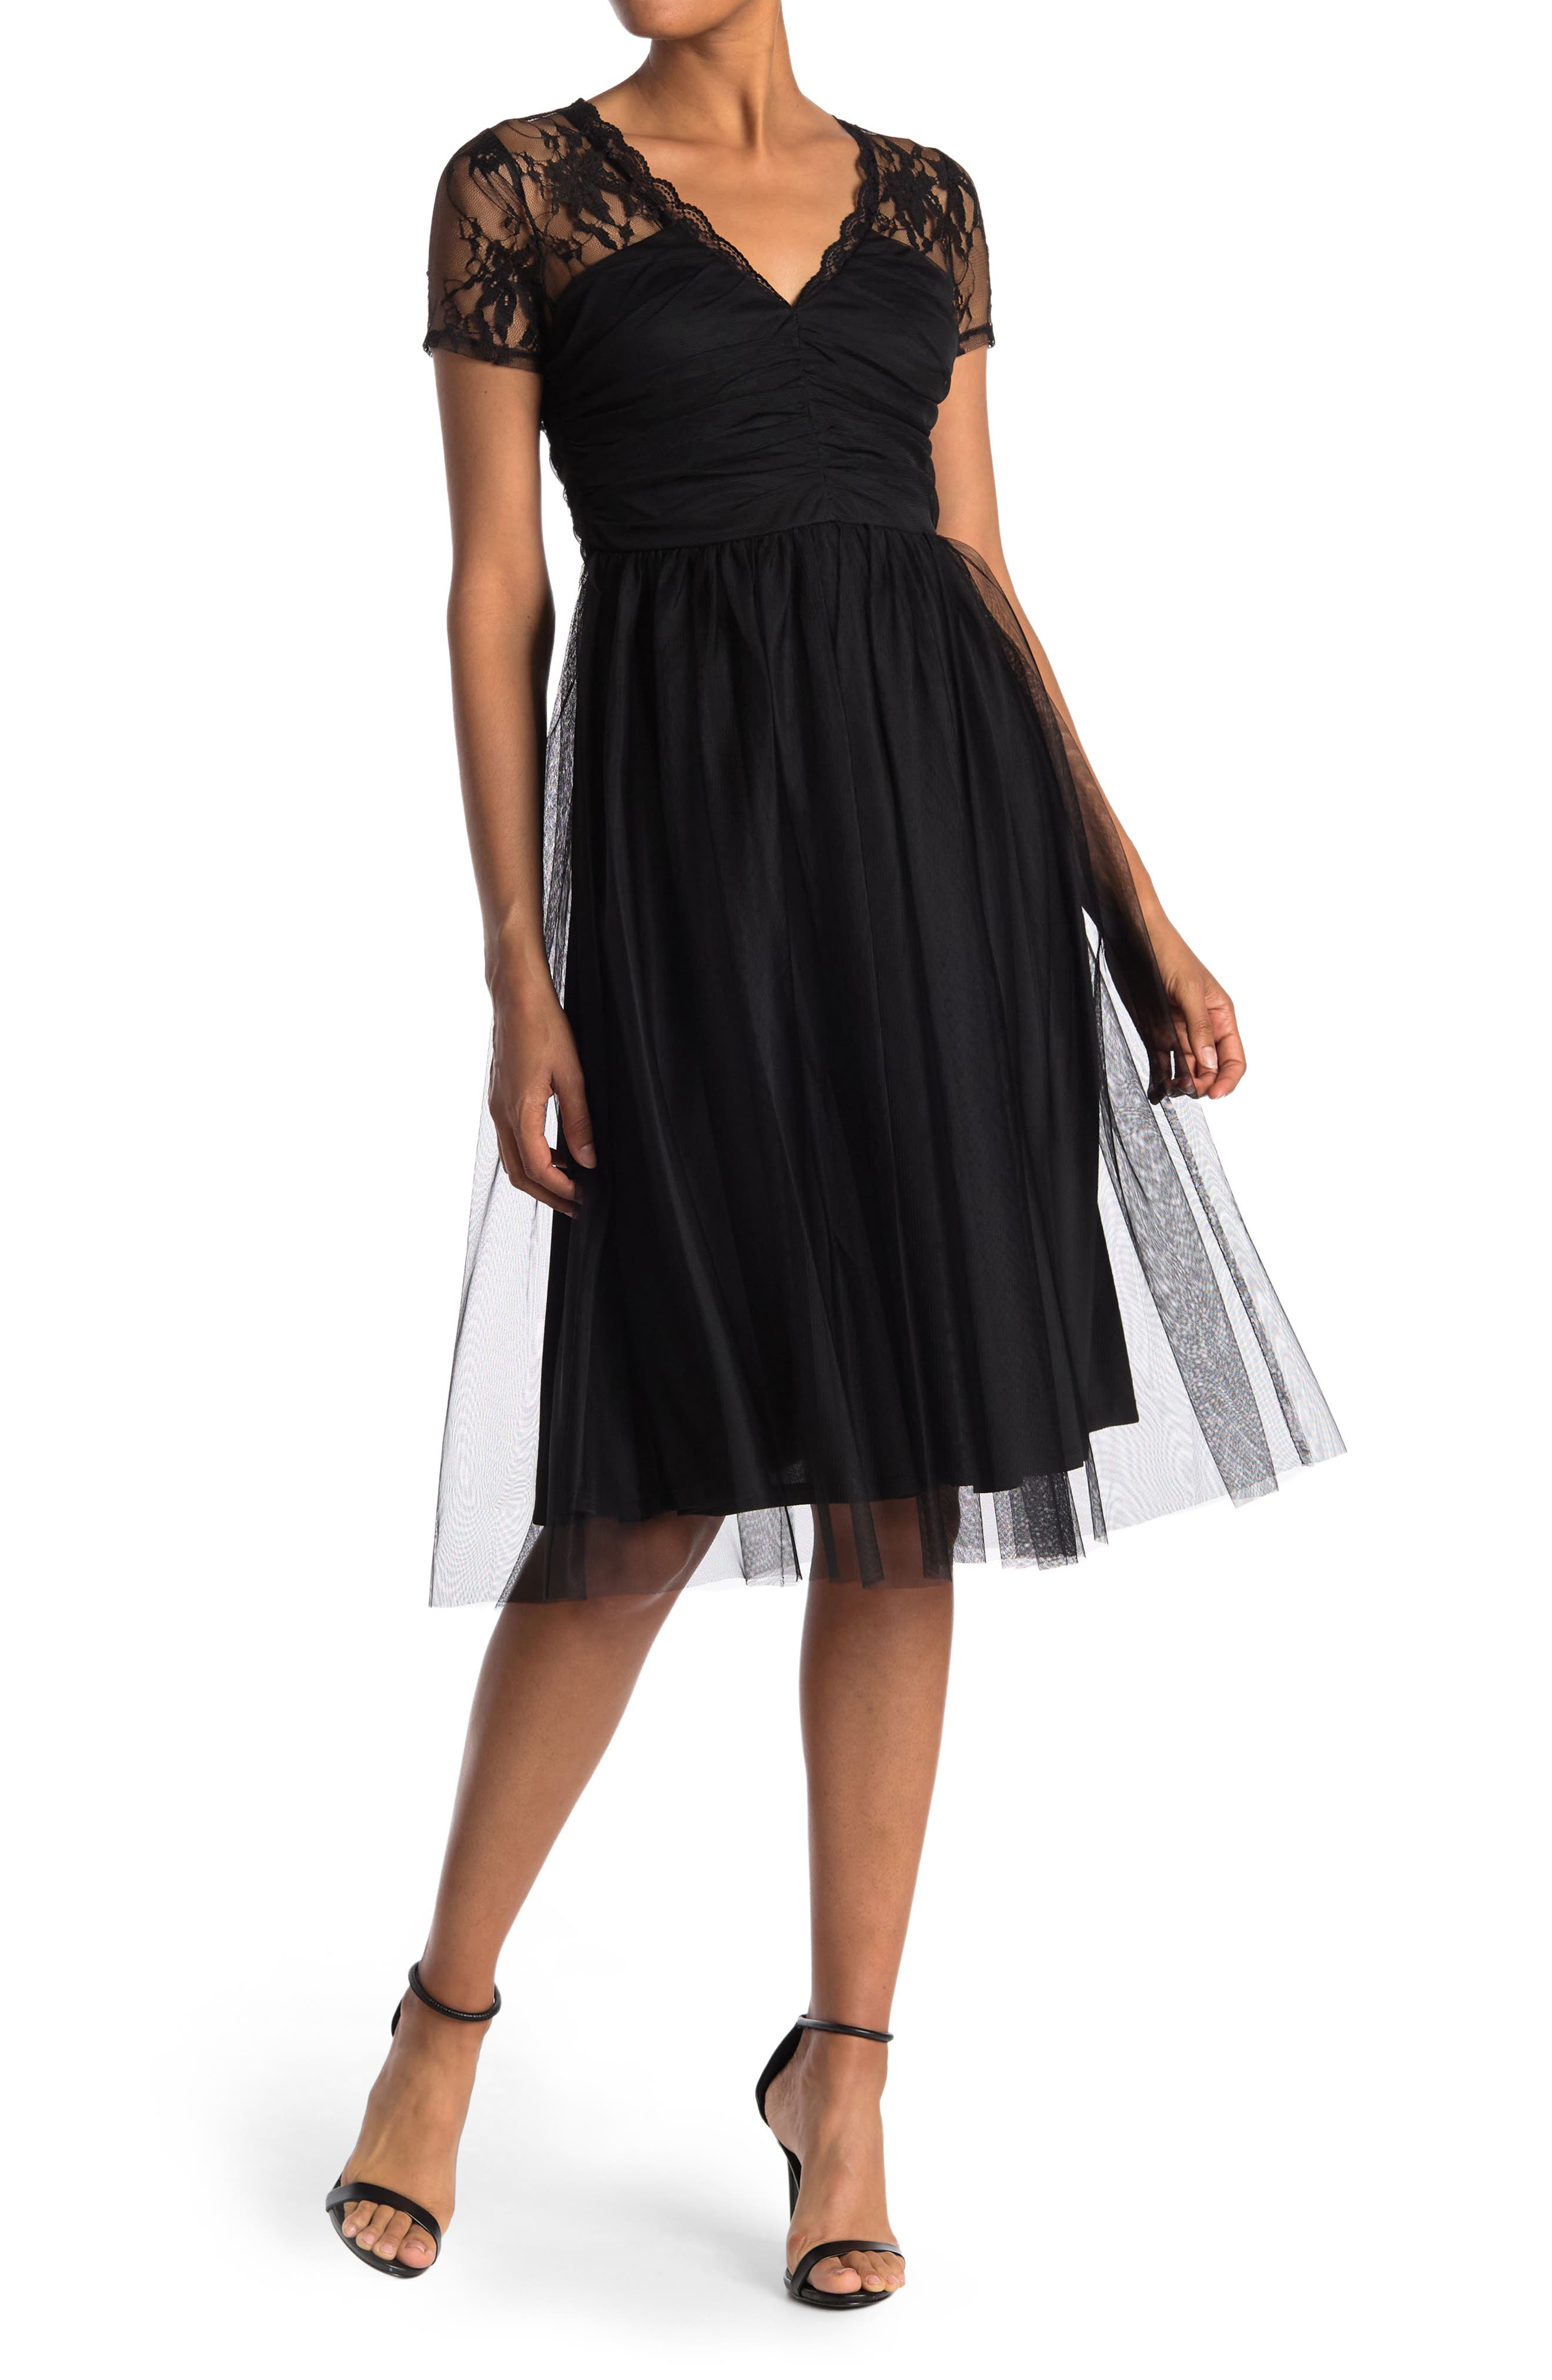 Buy > nordstrom rack black cocktail dress > in stock